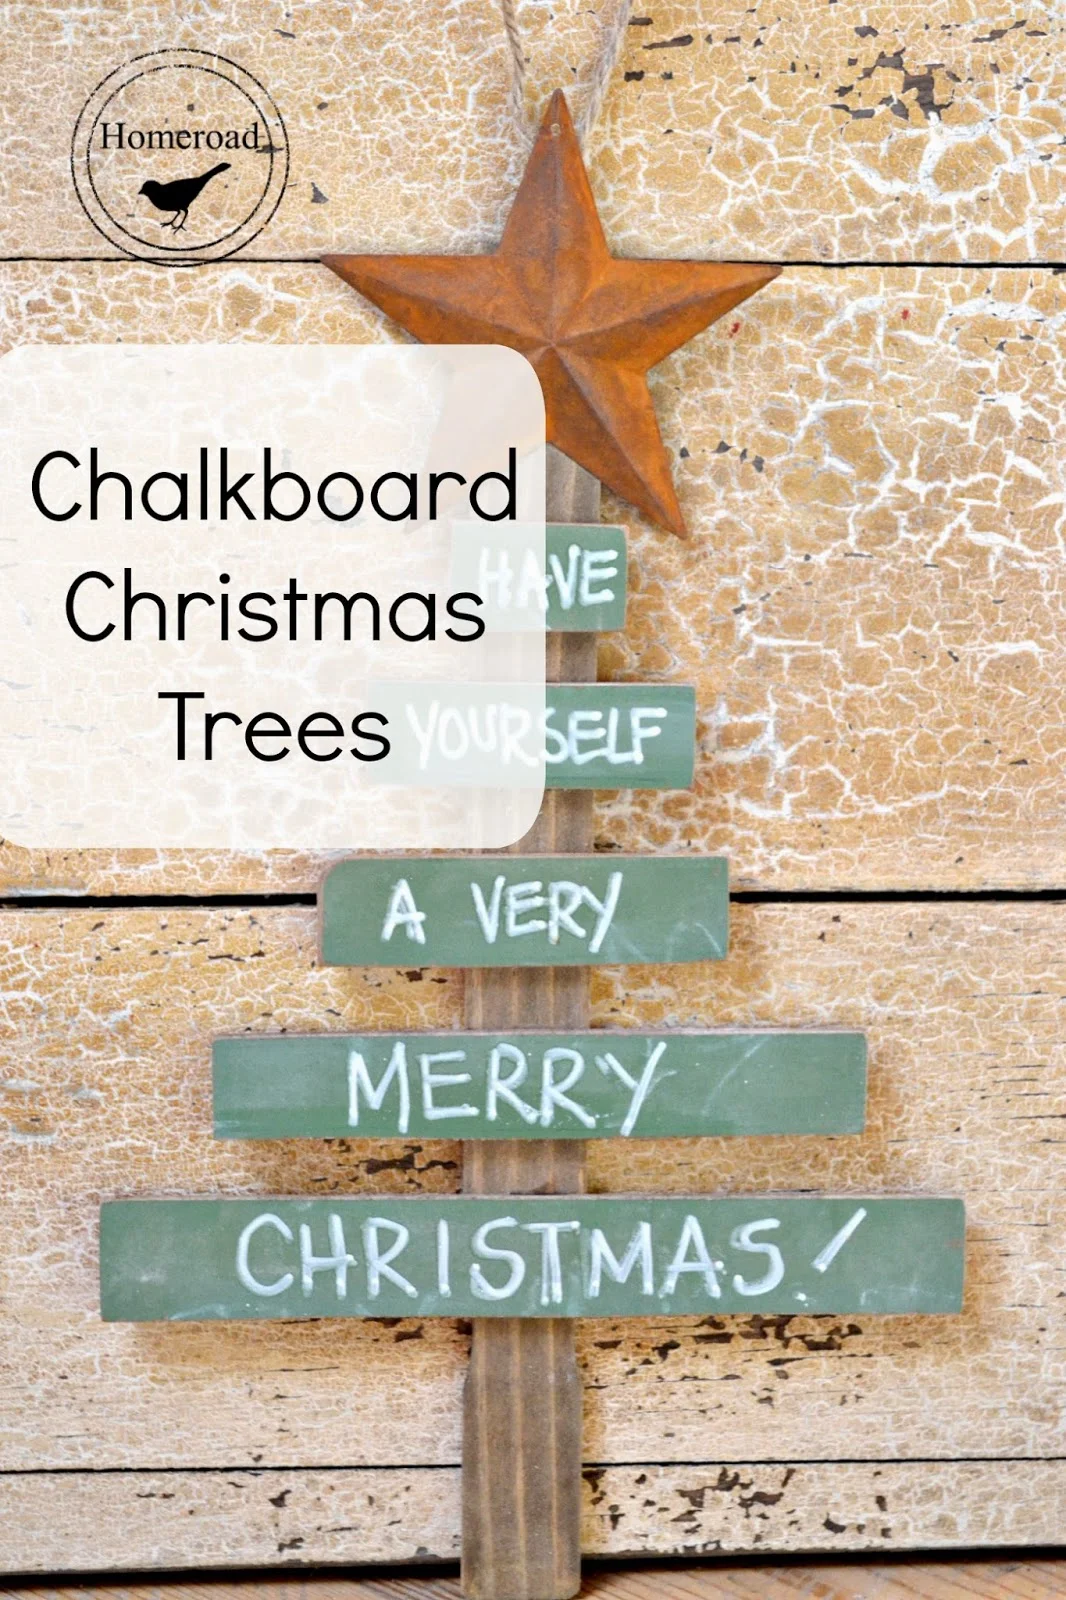 Chalkboard-christmas-trees www.homeroad.net